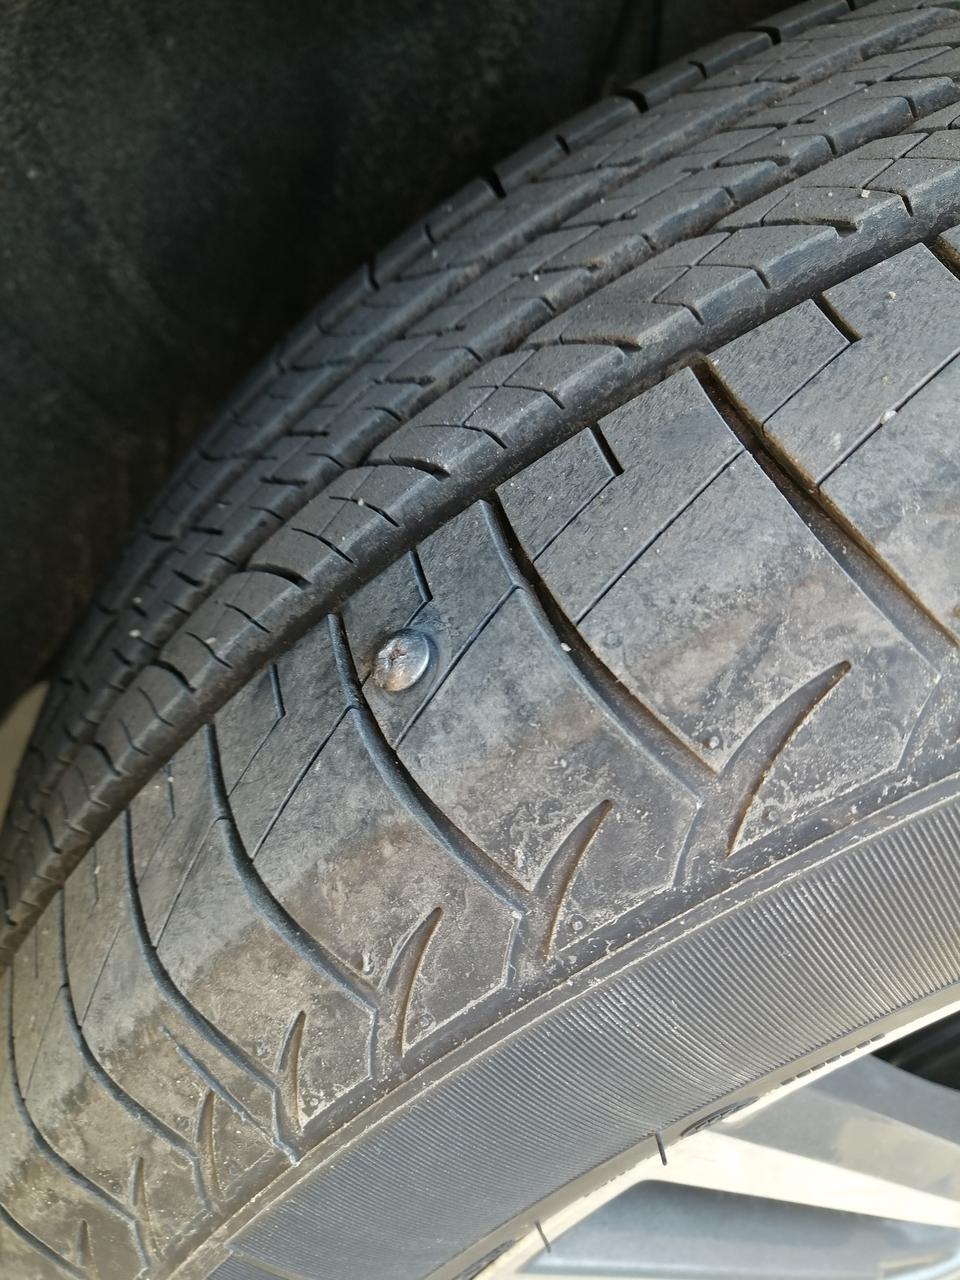 宋pro轮胎被螺丝钉扎了  拔掉有个小洞没漏气需不需补